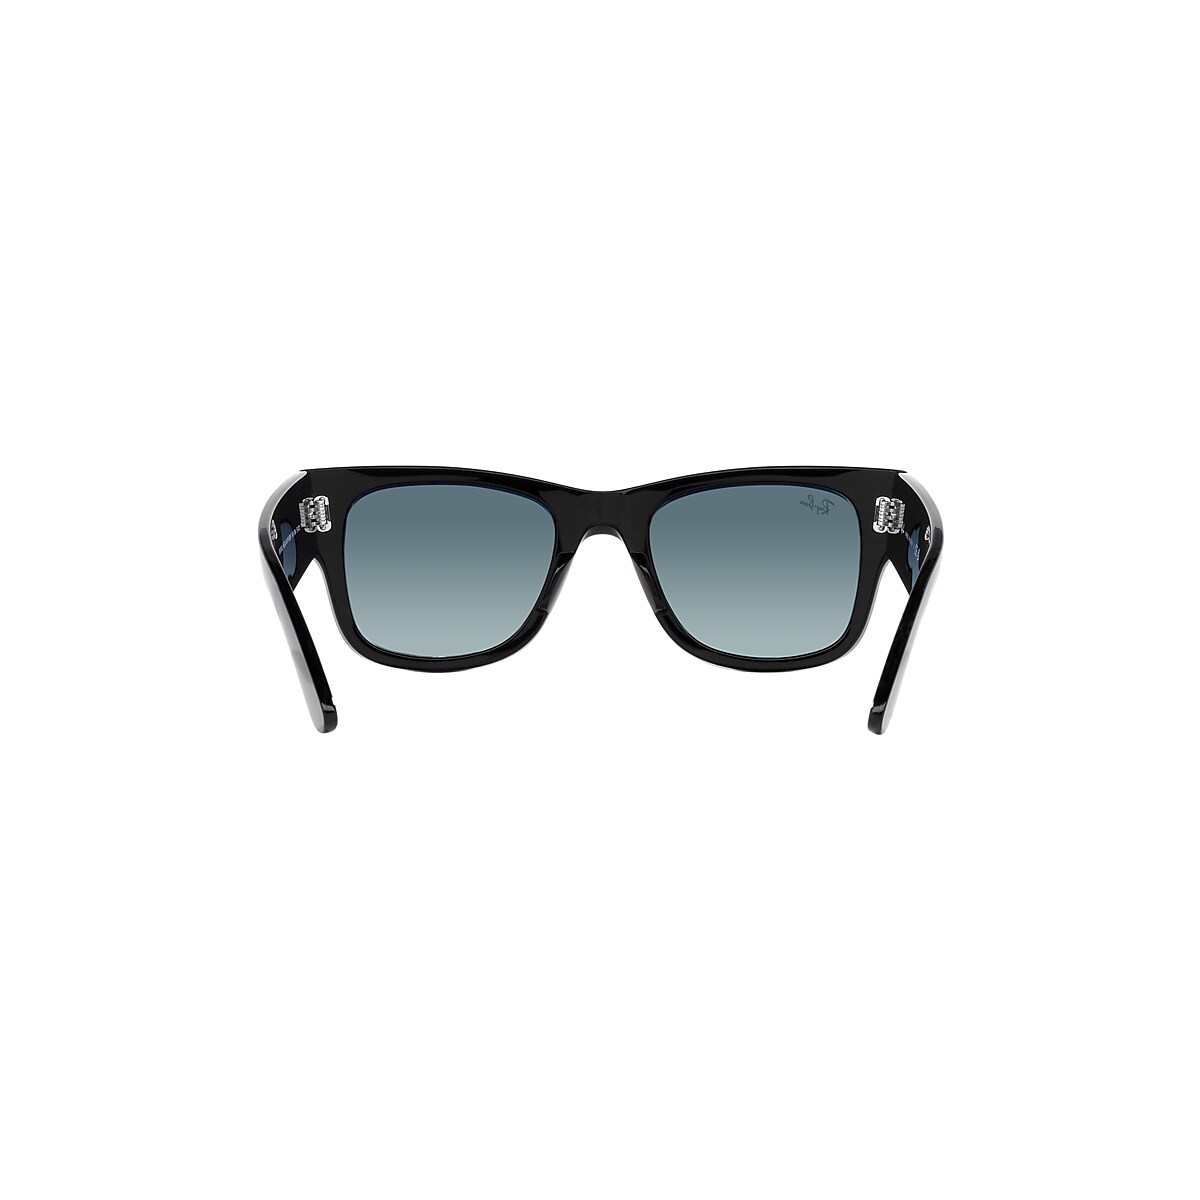 MEGA WAYFARER LIMITED Sunglasses in Black and Blue/Grey - RB0840S